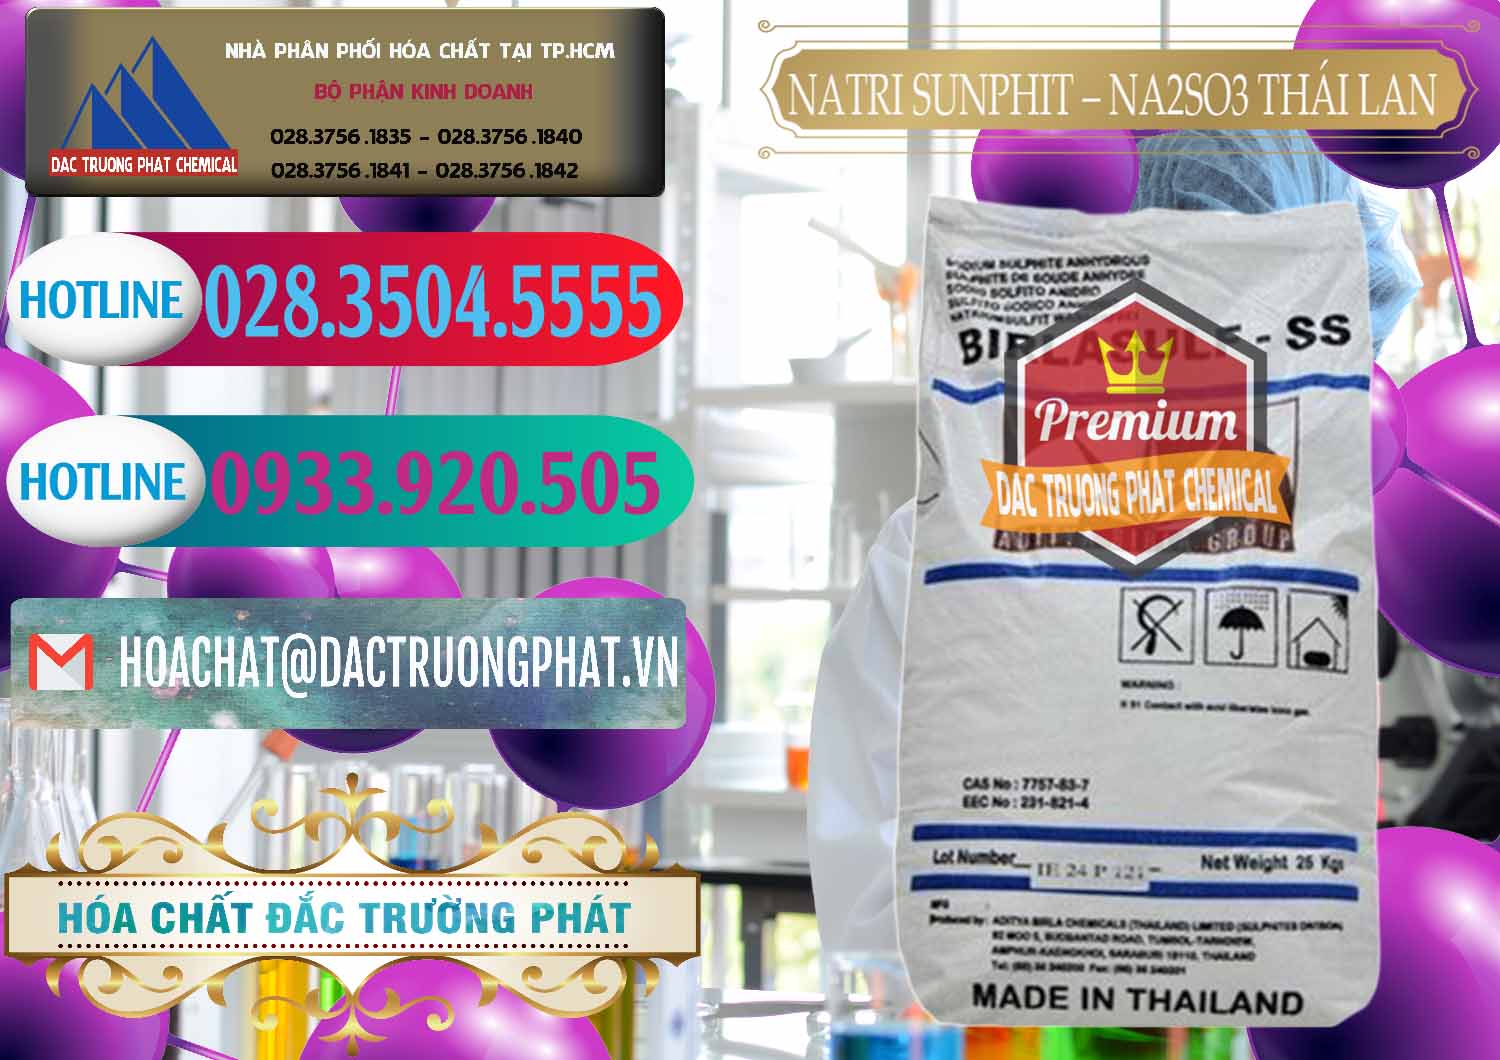 Công ty bán & cung ứng Natri Sunphit - NA2SO3 Thái Lan - 0105 - Phân phối & bán hóa chất tại TP.HCM - truongphat.vn